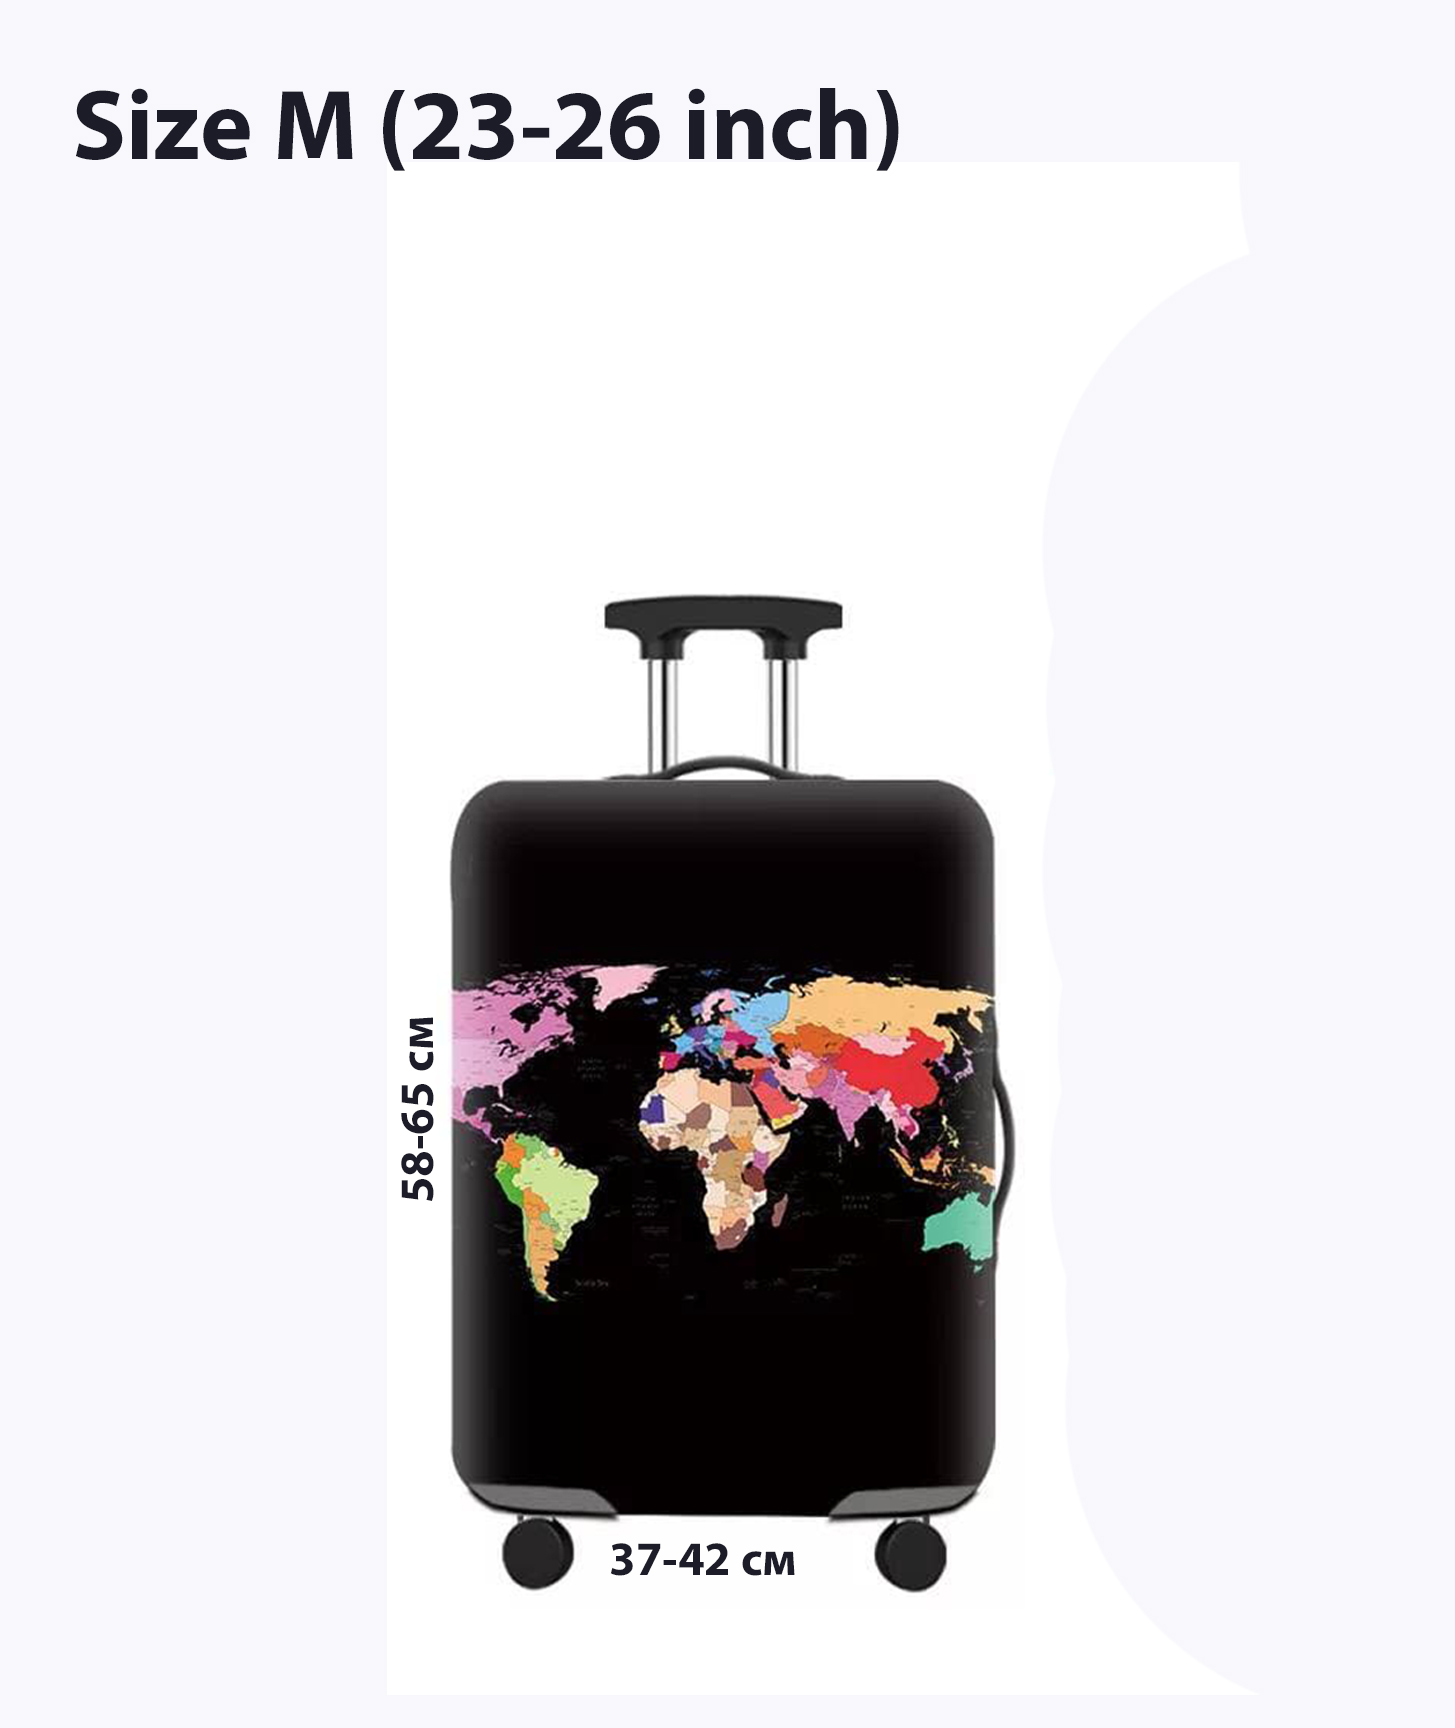 Чехол для чемоданов. Размер: M (23-26 inch)